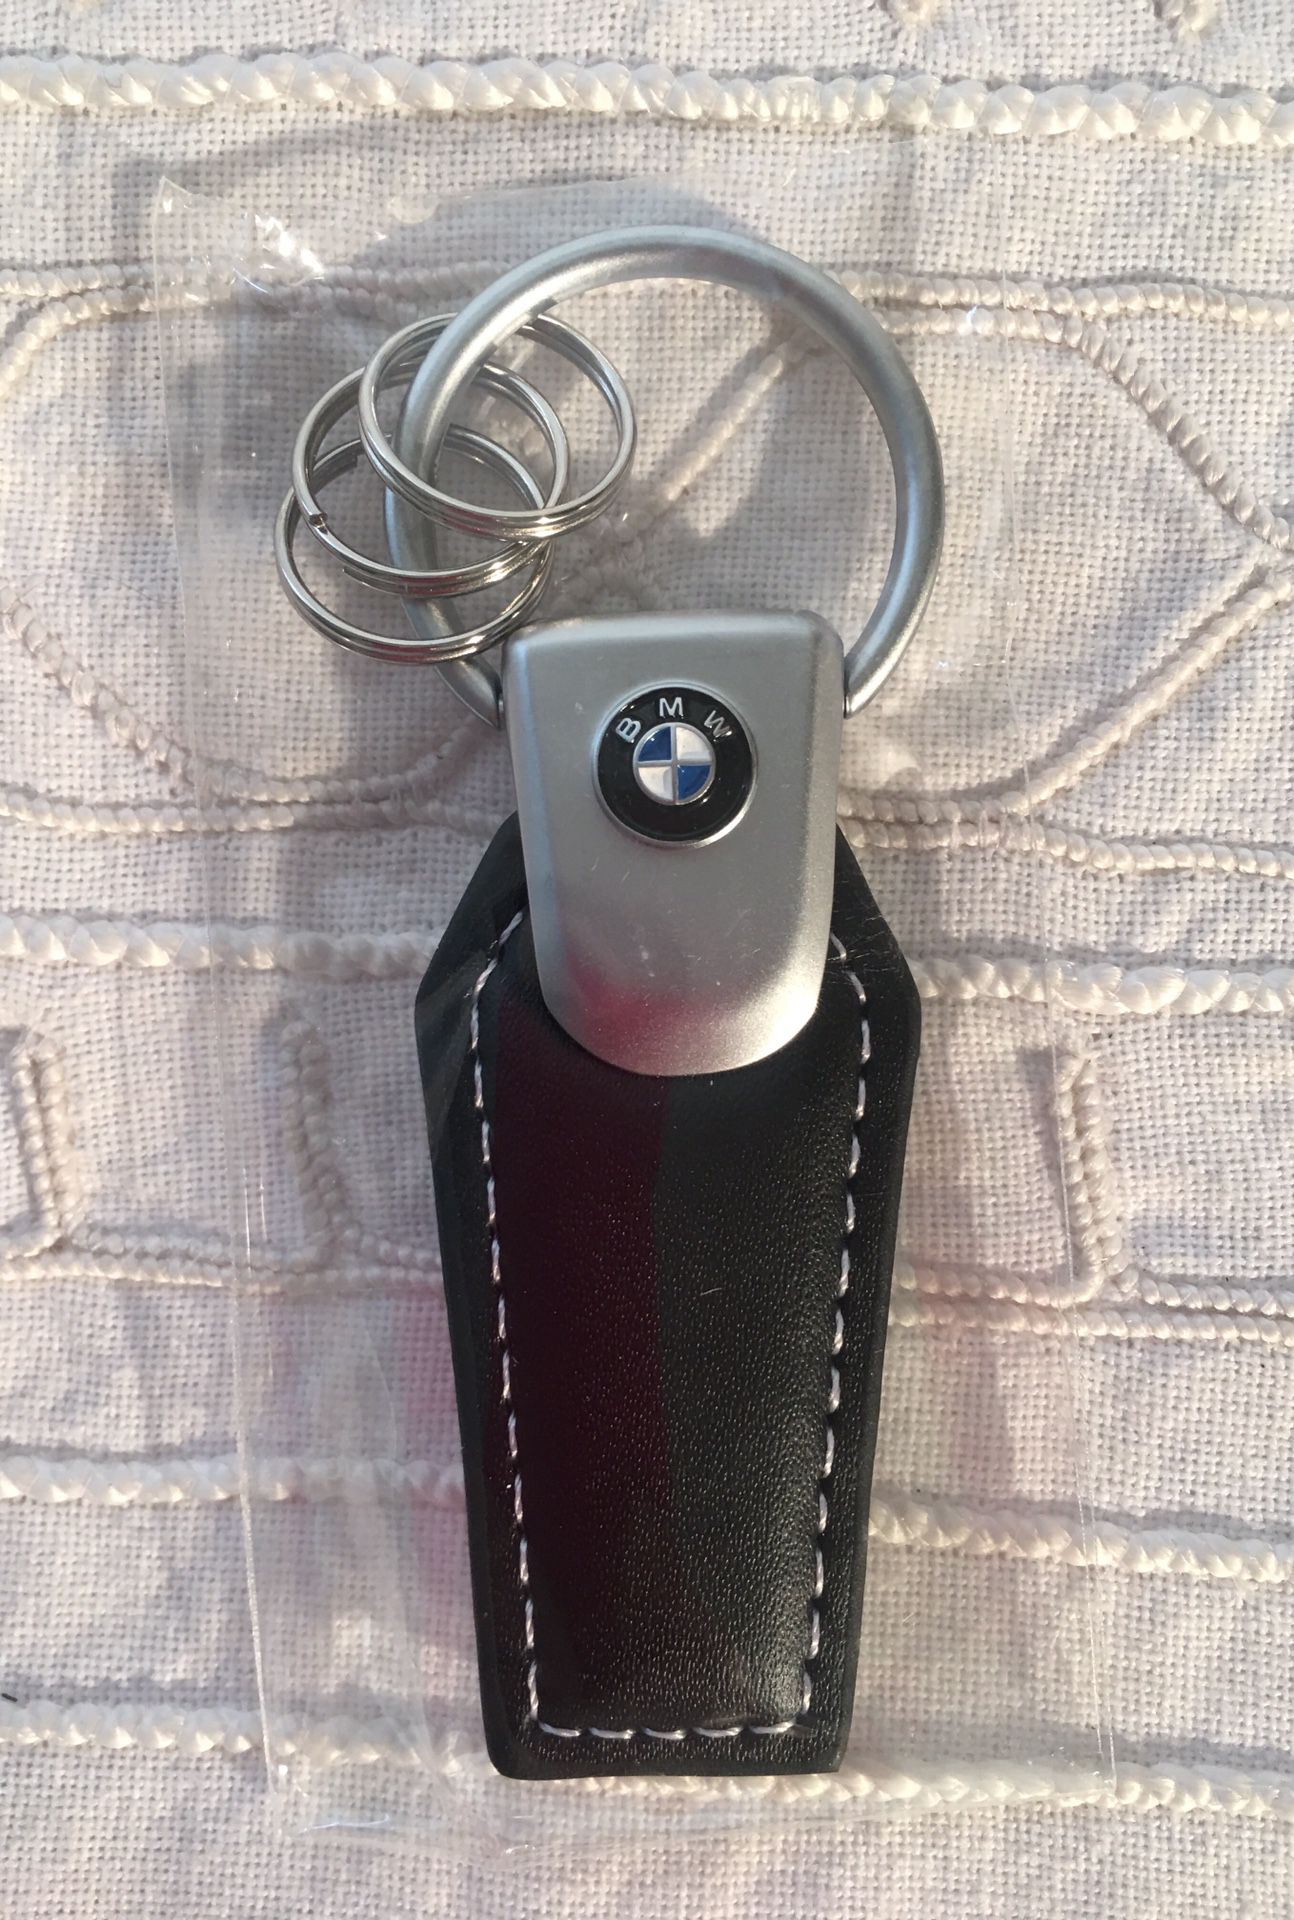 BMW keychain, brand new